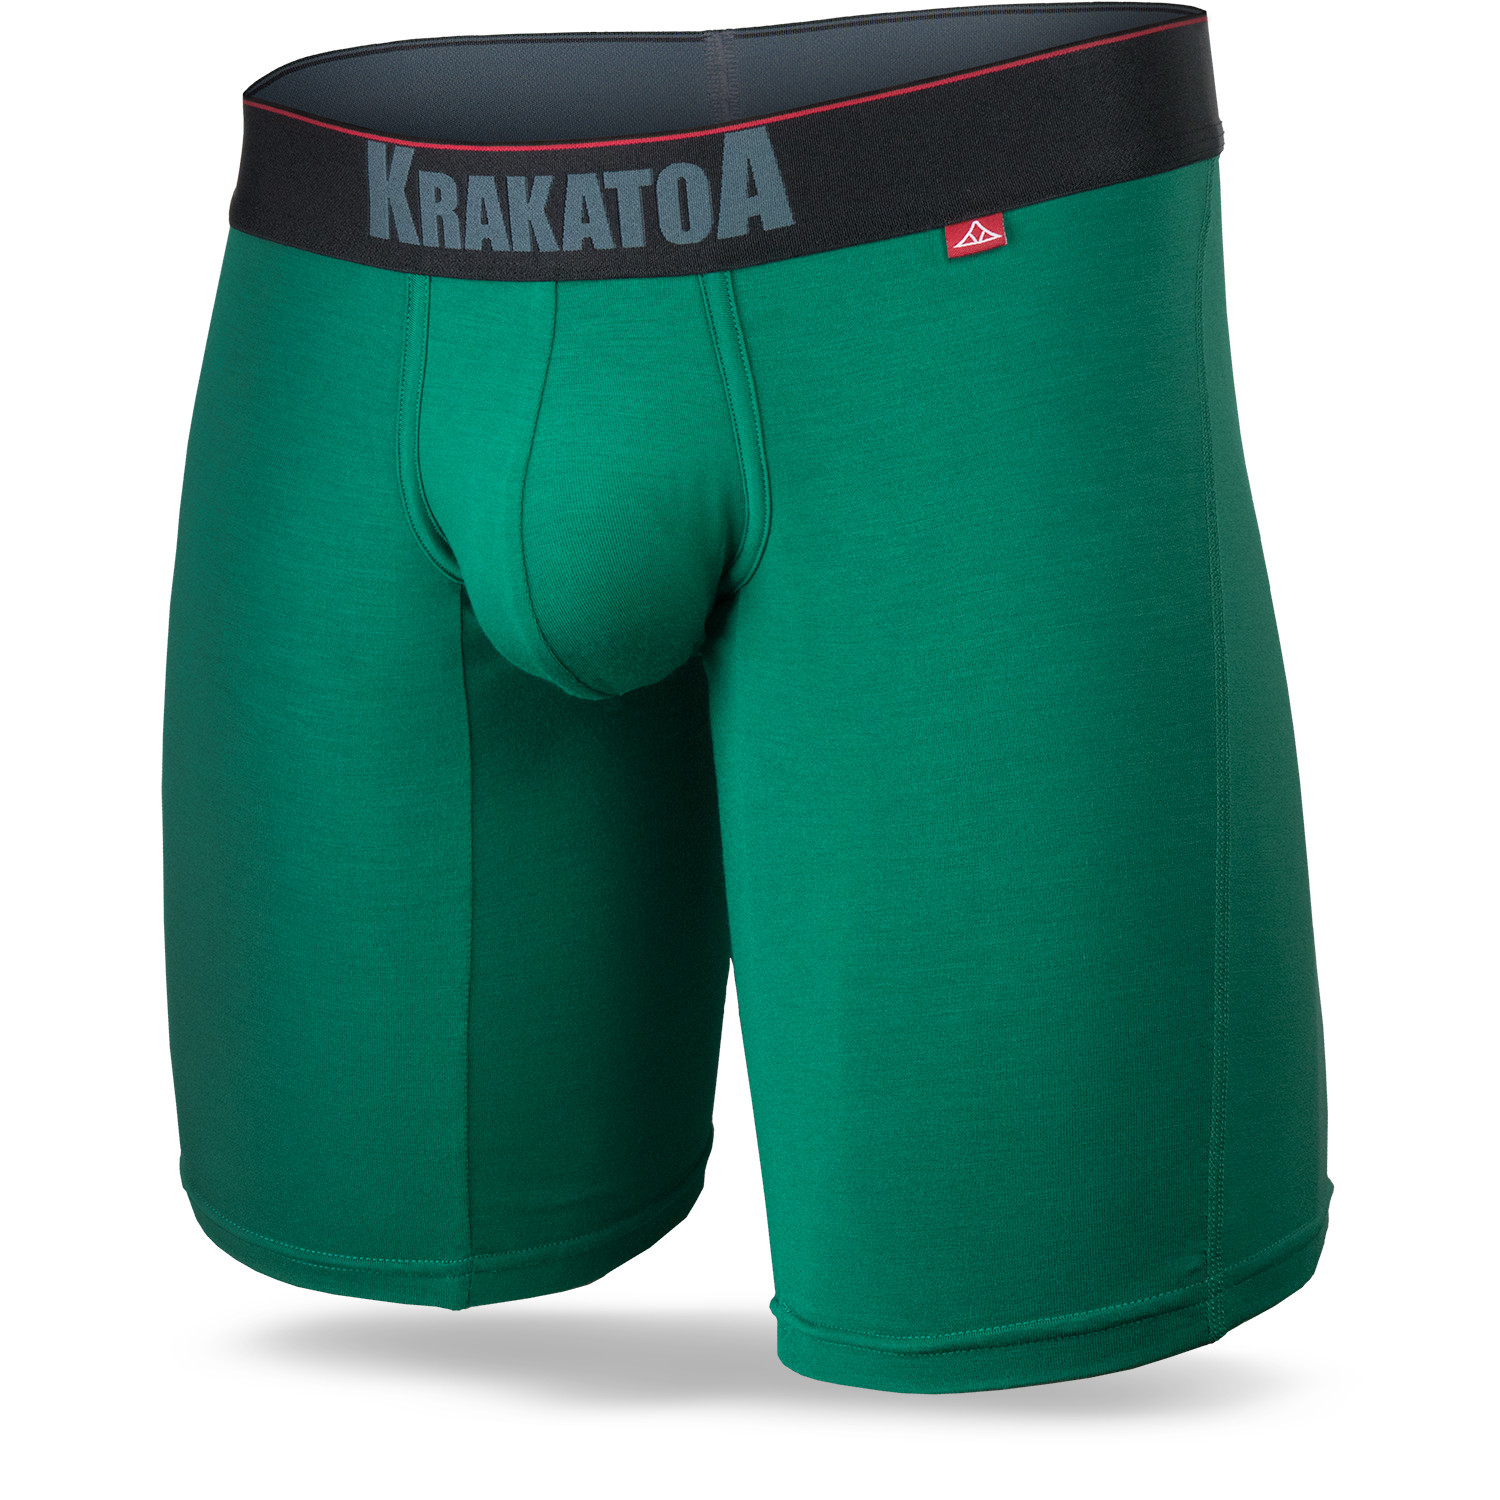 Krakatoa Trunks, Short Boxers